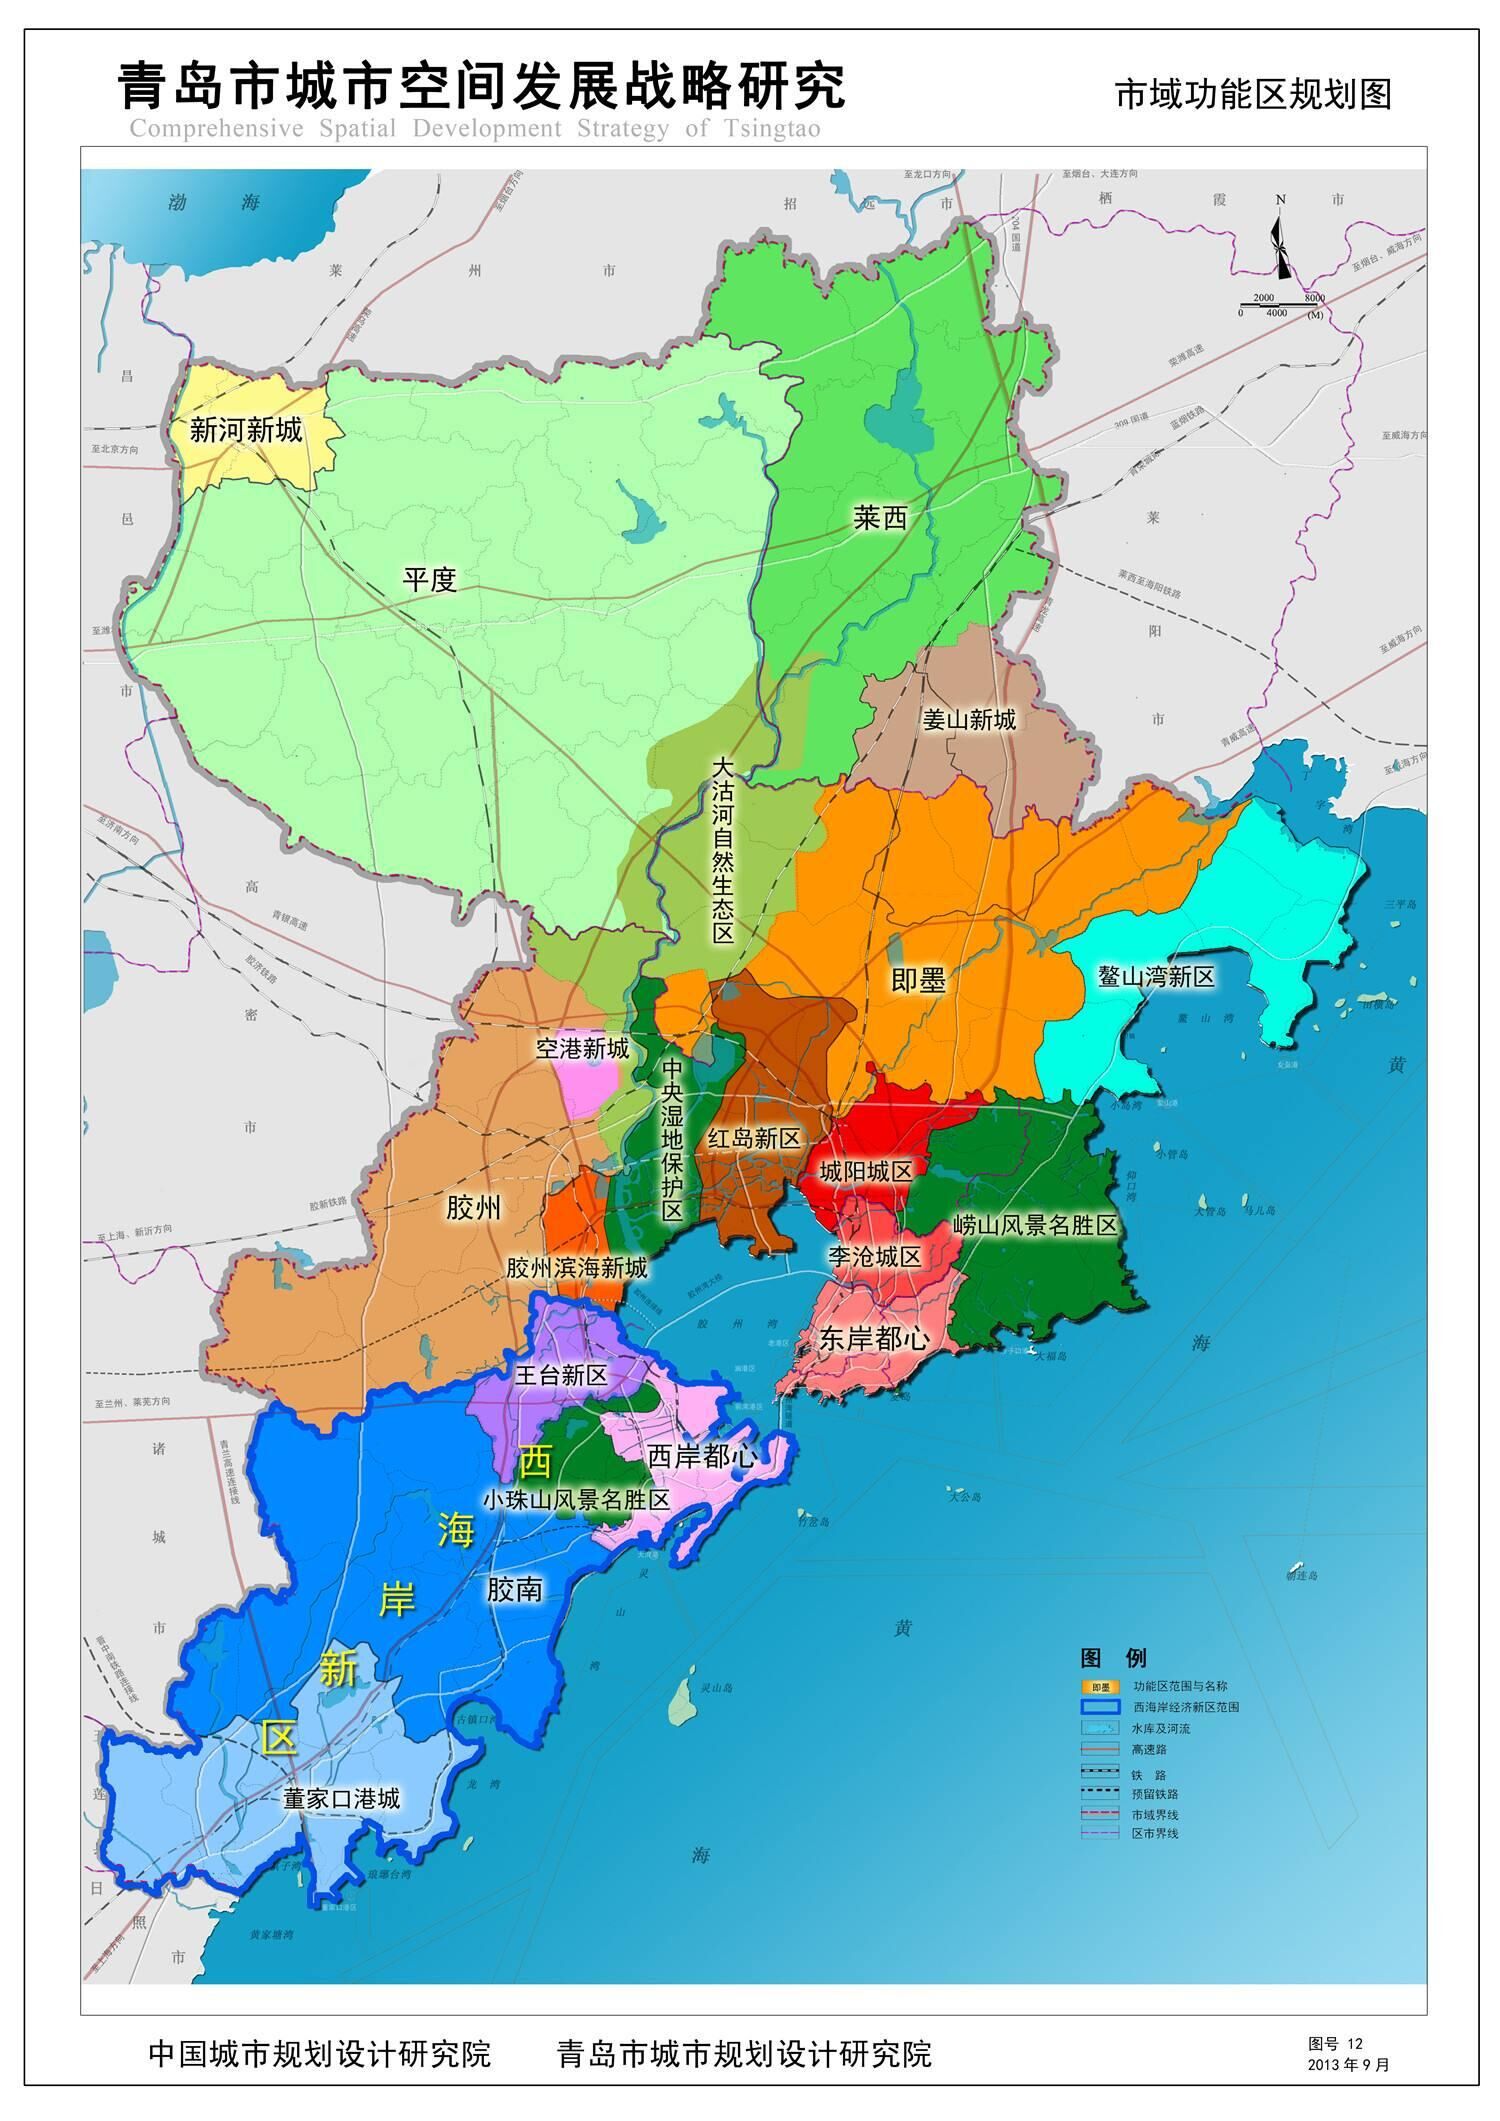 青岛市区域划分详图图片